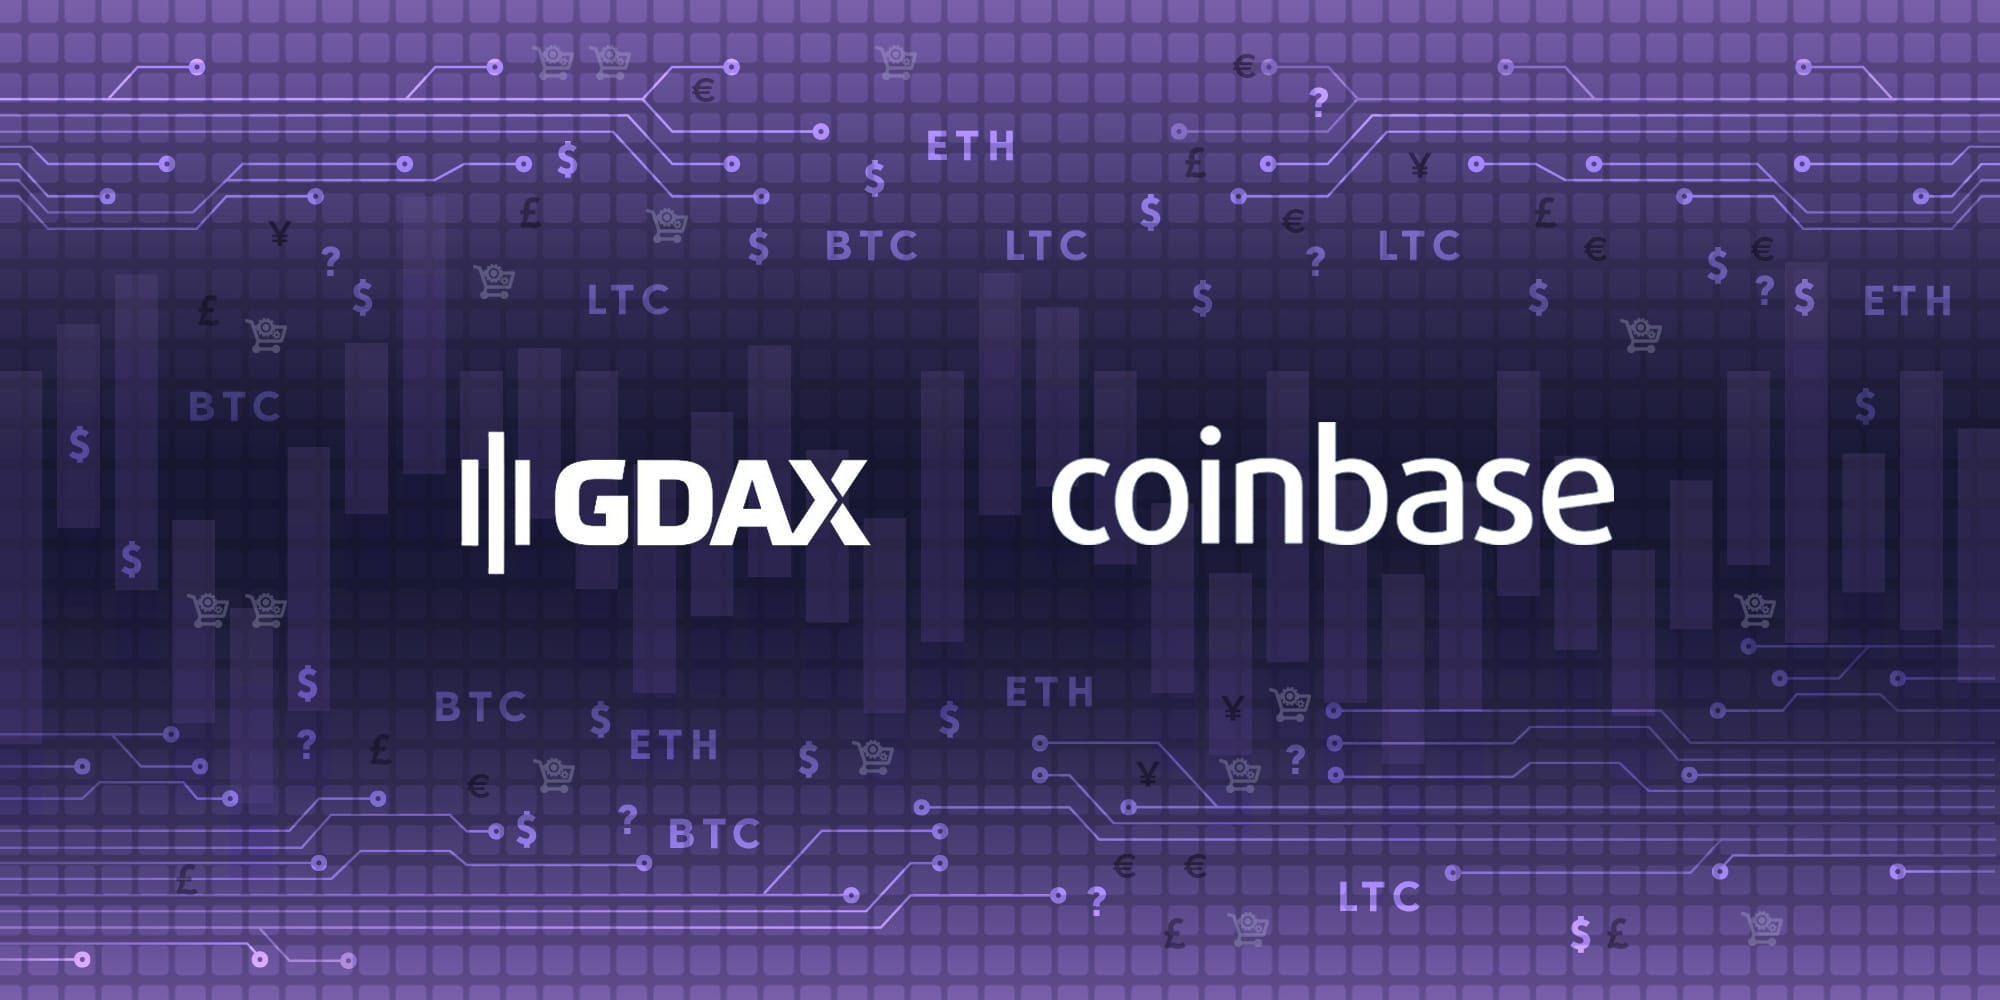 pinigų pervedimas iš coinbase į gdax bitkoinų prognozė 24 val